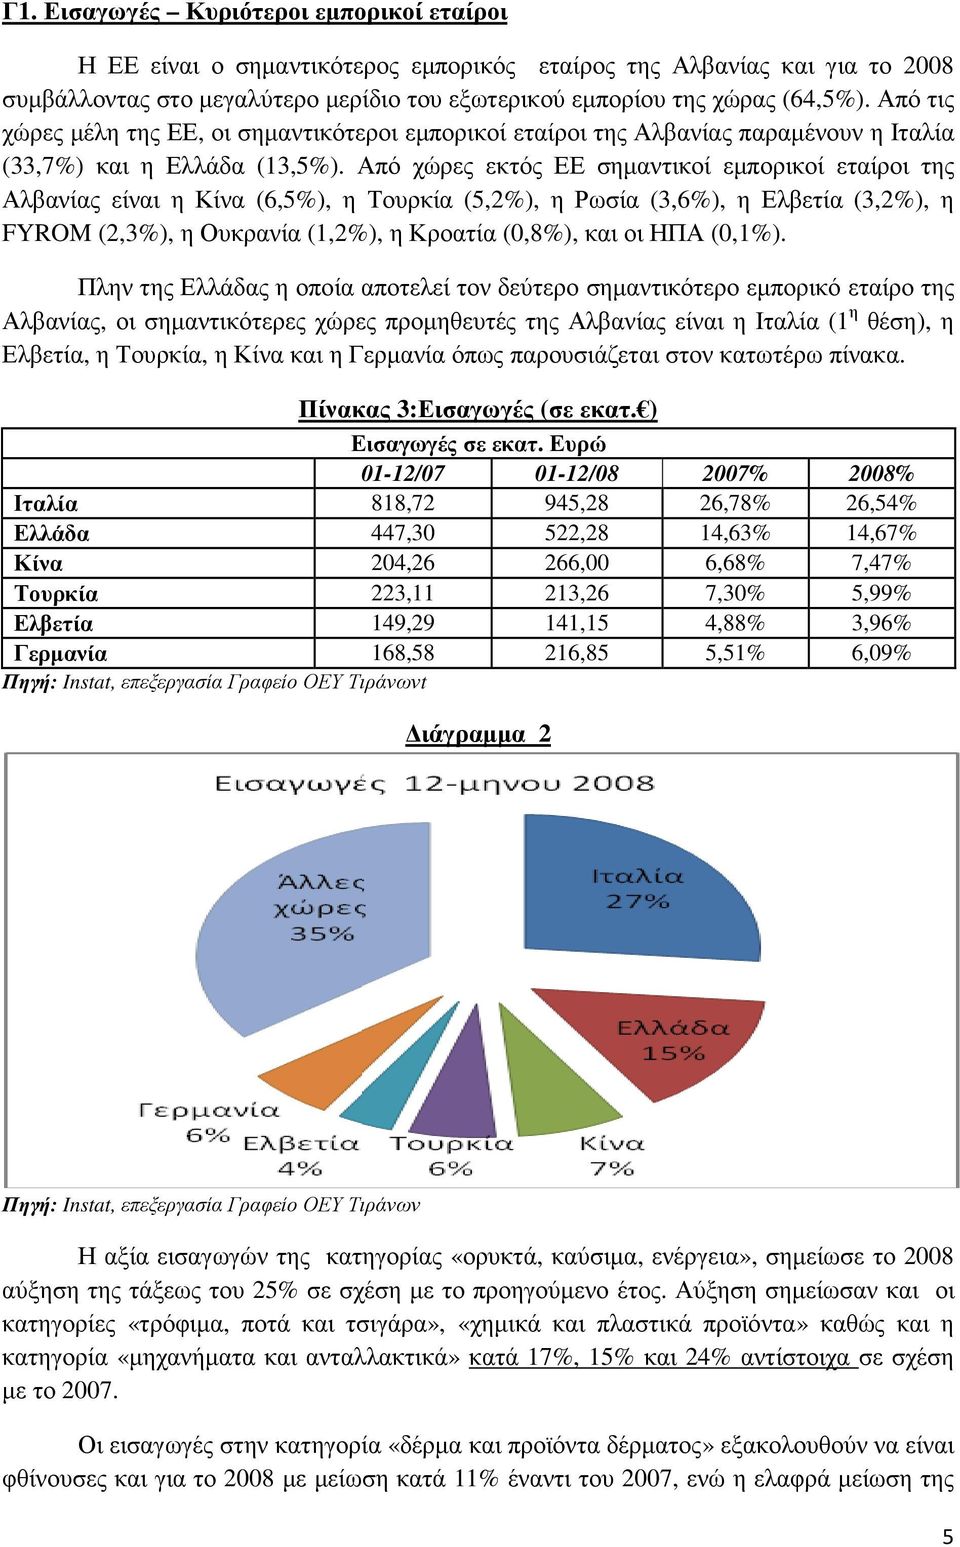 Από χώρες εκτός ΕΕ σηµαντικοί εµπορικοί εταίροι της Αλβανίας είναι η Κίνα (6,5%), η Τουρκία (5,2%), η Ρωσία (3,6%), η Ελβετία (3,2%), η FYROM (2,3%), η Ουκρανία (1,2%), η Κροατία (0,8%), και οι ΗΠΑ